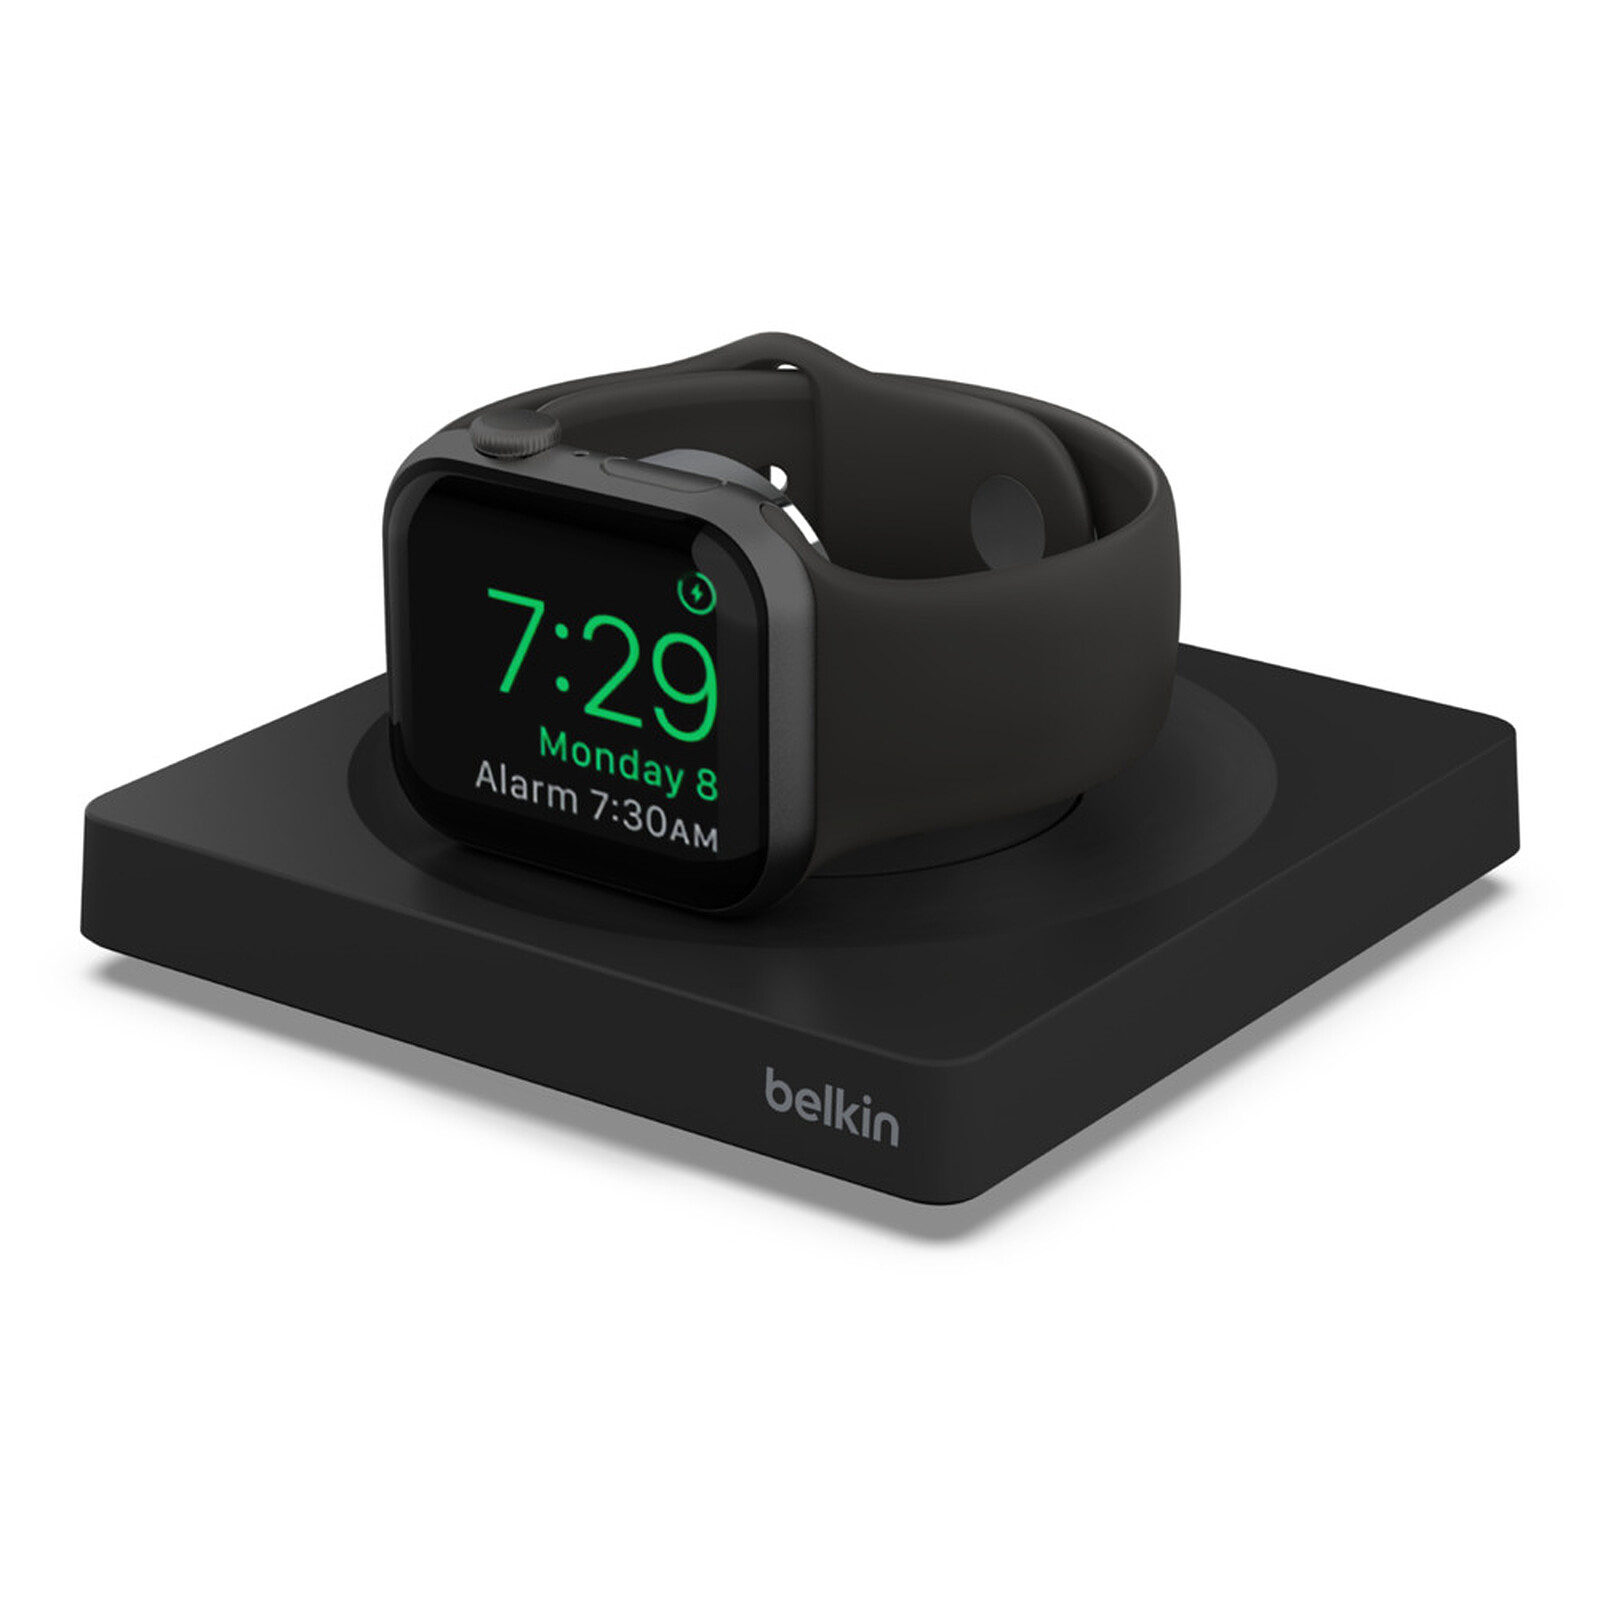 Promo sur des chargeurs iPhone/Apple Watch et hub pour iPad de Belkin et  Satechi